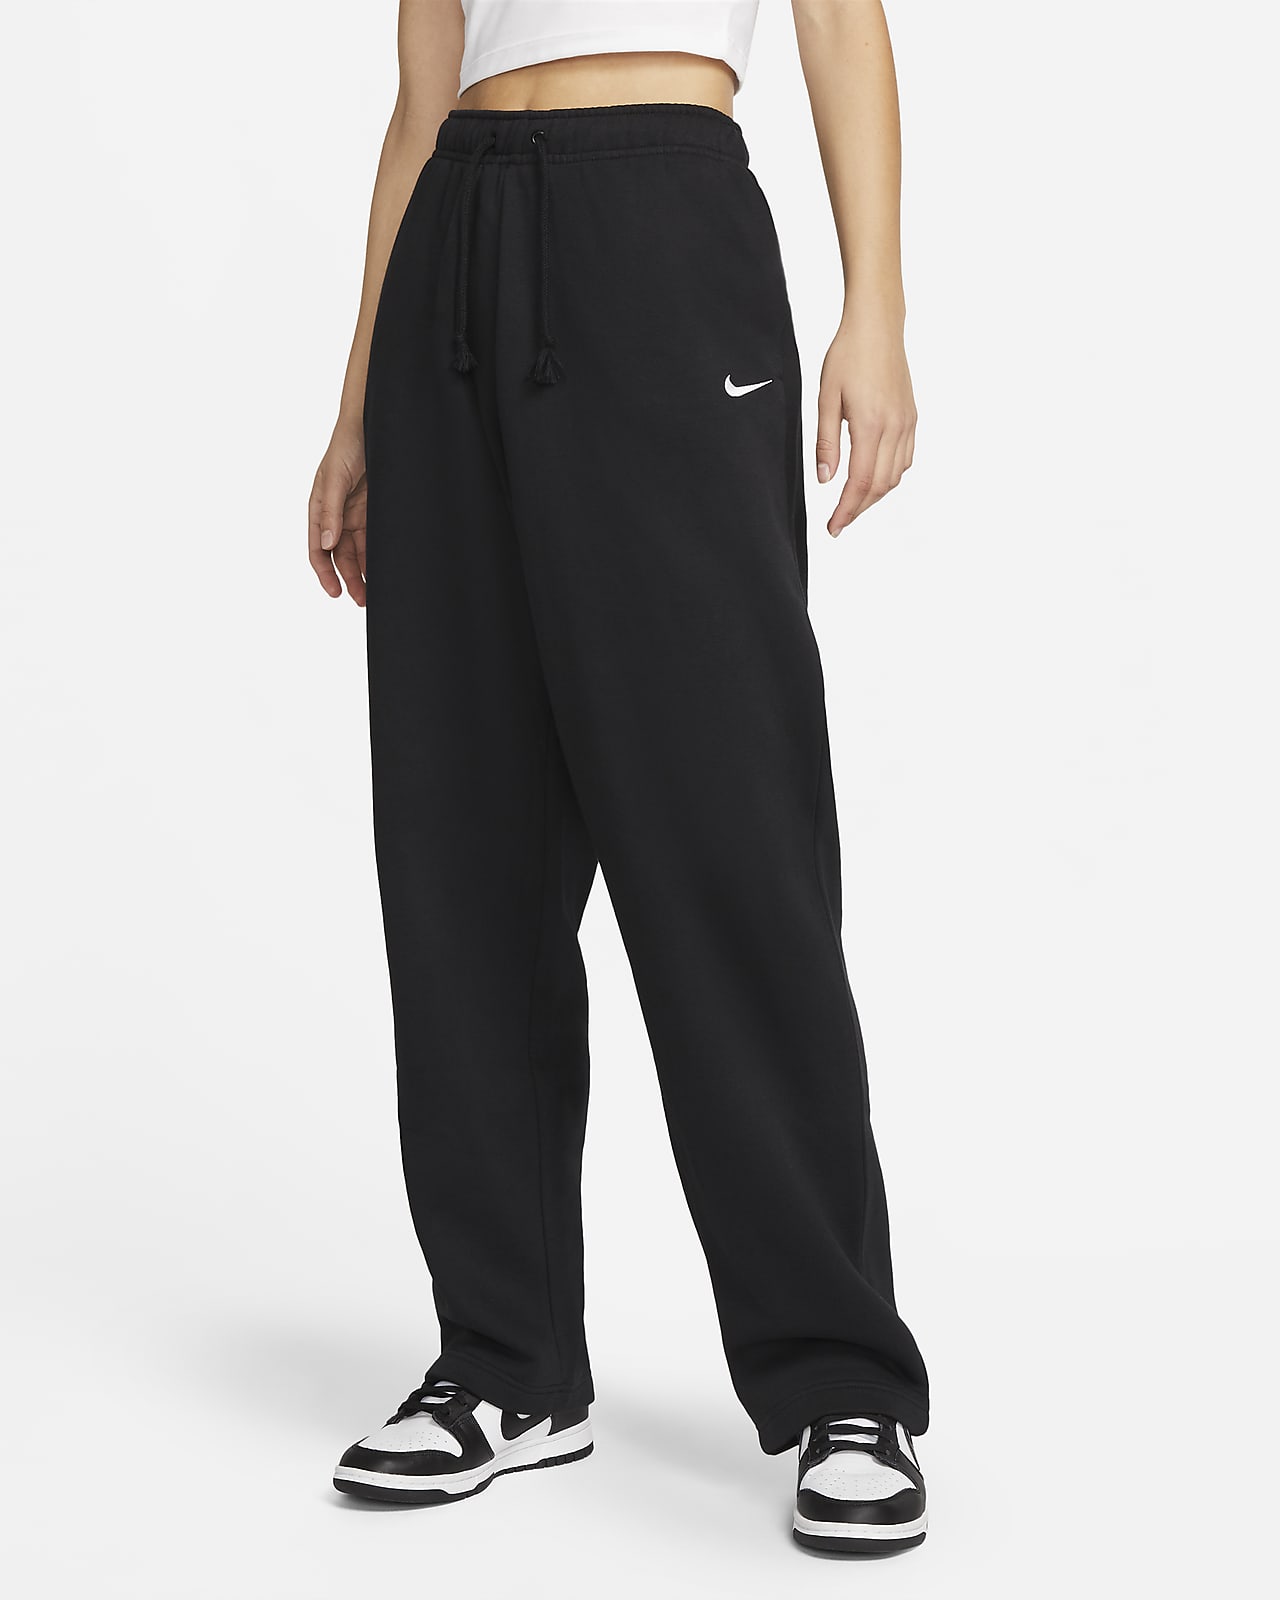 Pantaloni in fleece a vita media con bordo aperto Nike Sportswear Collection Essential - Donna